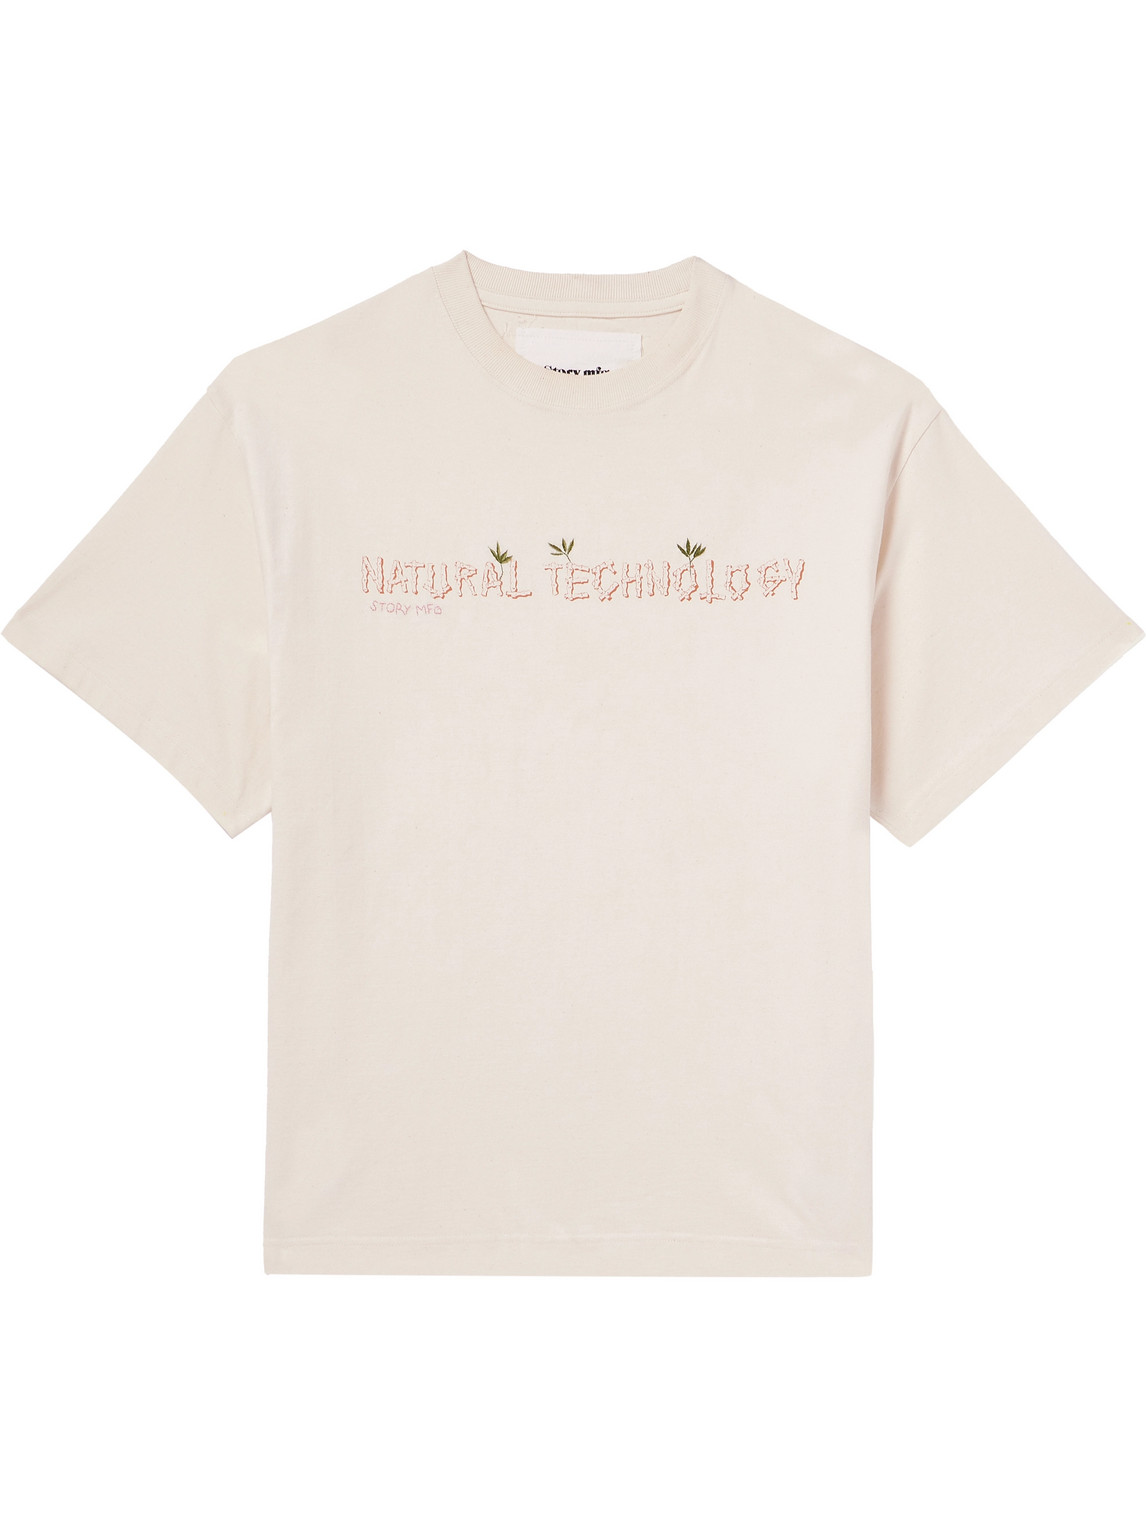 Story Mfg. - Grateful Embroidered Printed Organic Cotton-Jersey T-Shirt - Men - Neutrals - L von Story Mfg.